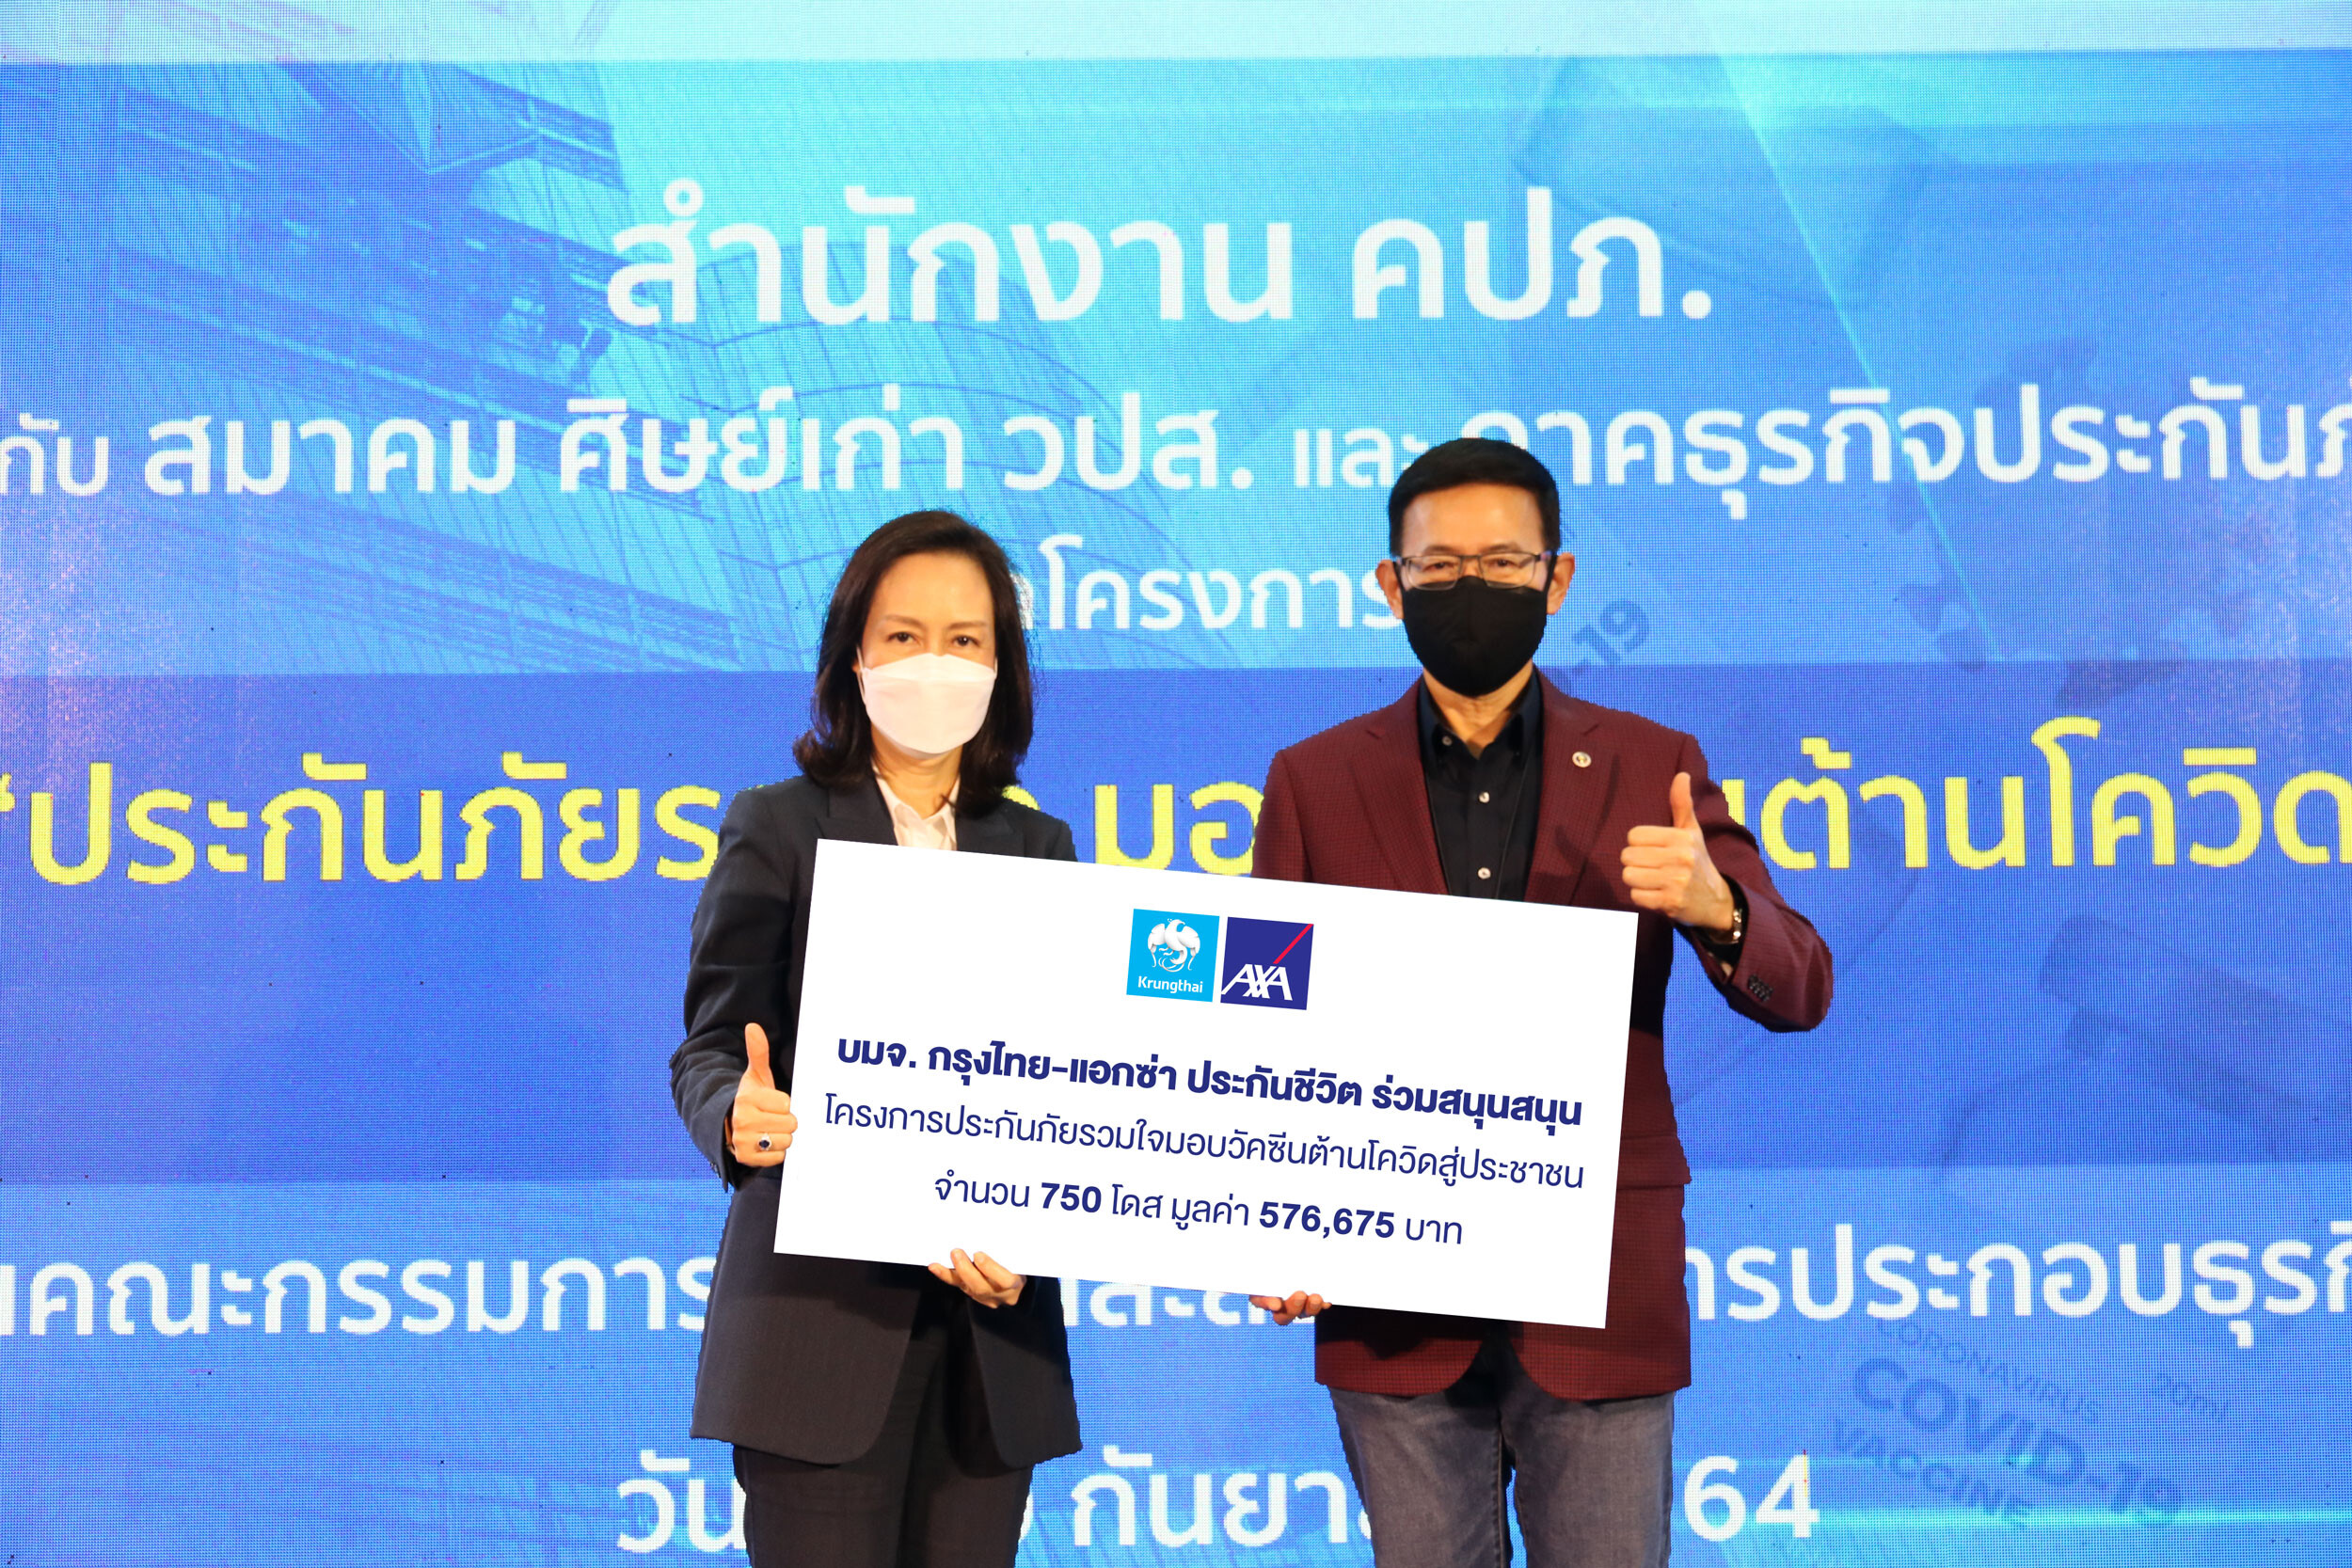 กรุงไทย-แอกซ่า ประกันชีวิต ร่วมสนับสนุนโครงการความร่วมมือ "ประกันภัยรวมใจมอบวัคซีนต้านโควิดสู่ประชาชน"